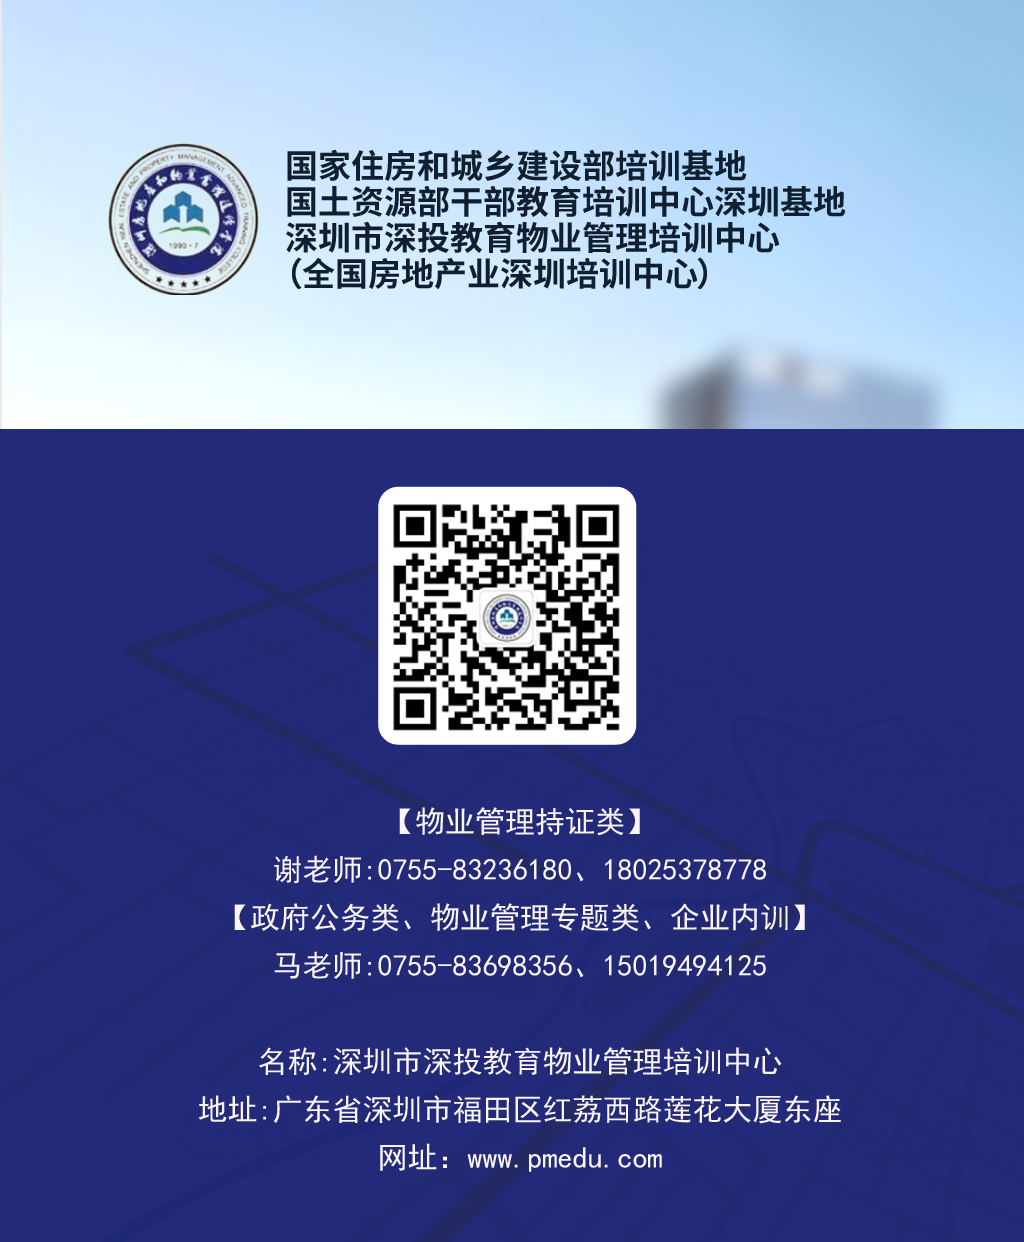 公众号-深圳市深投3522集团的新网站物业管理培训中心2.jpg